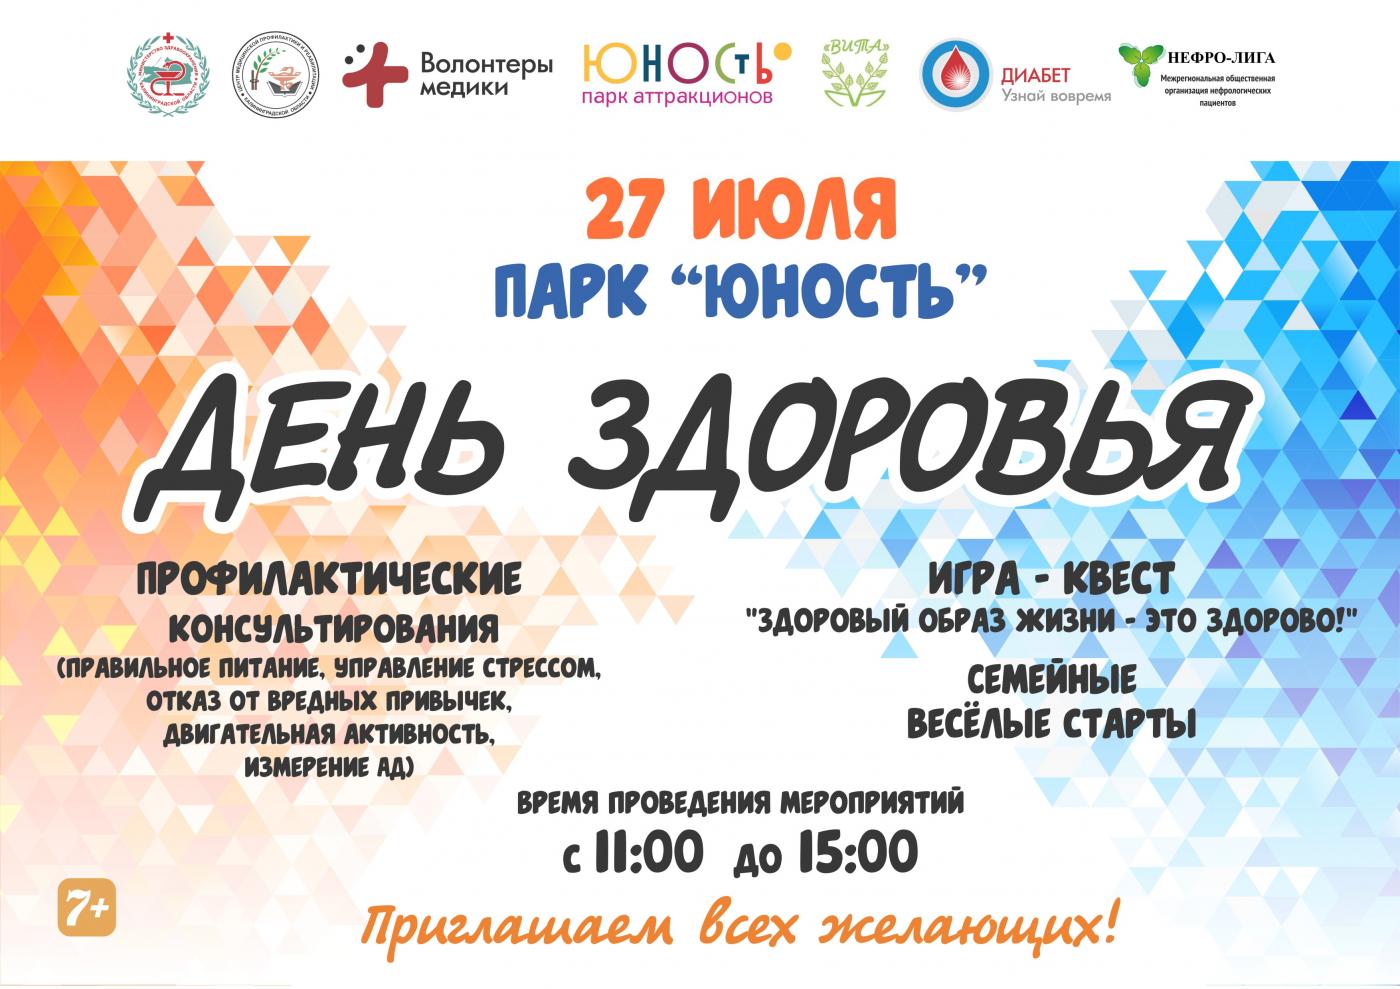 27 июля - День здоровья, парк "Юность", г.Калининград